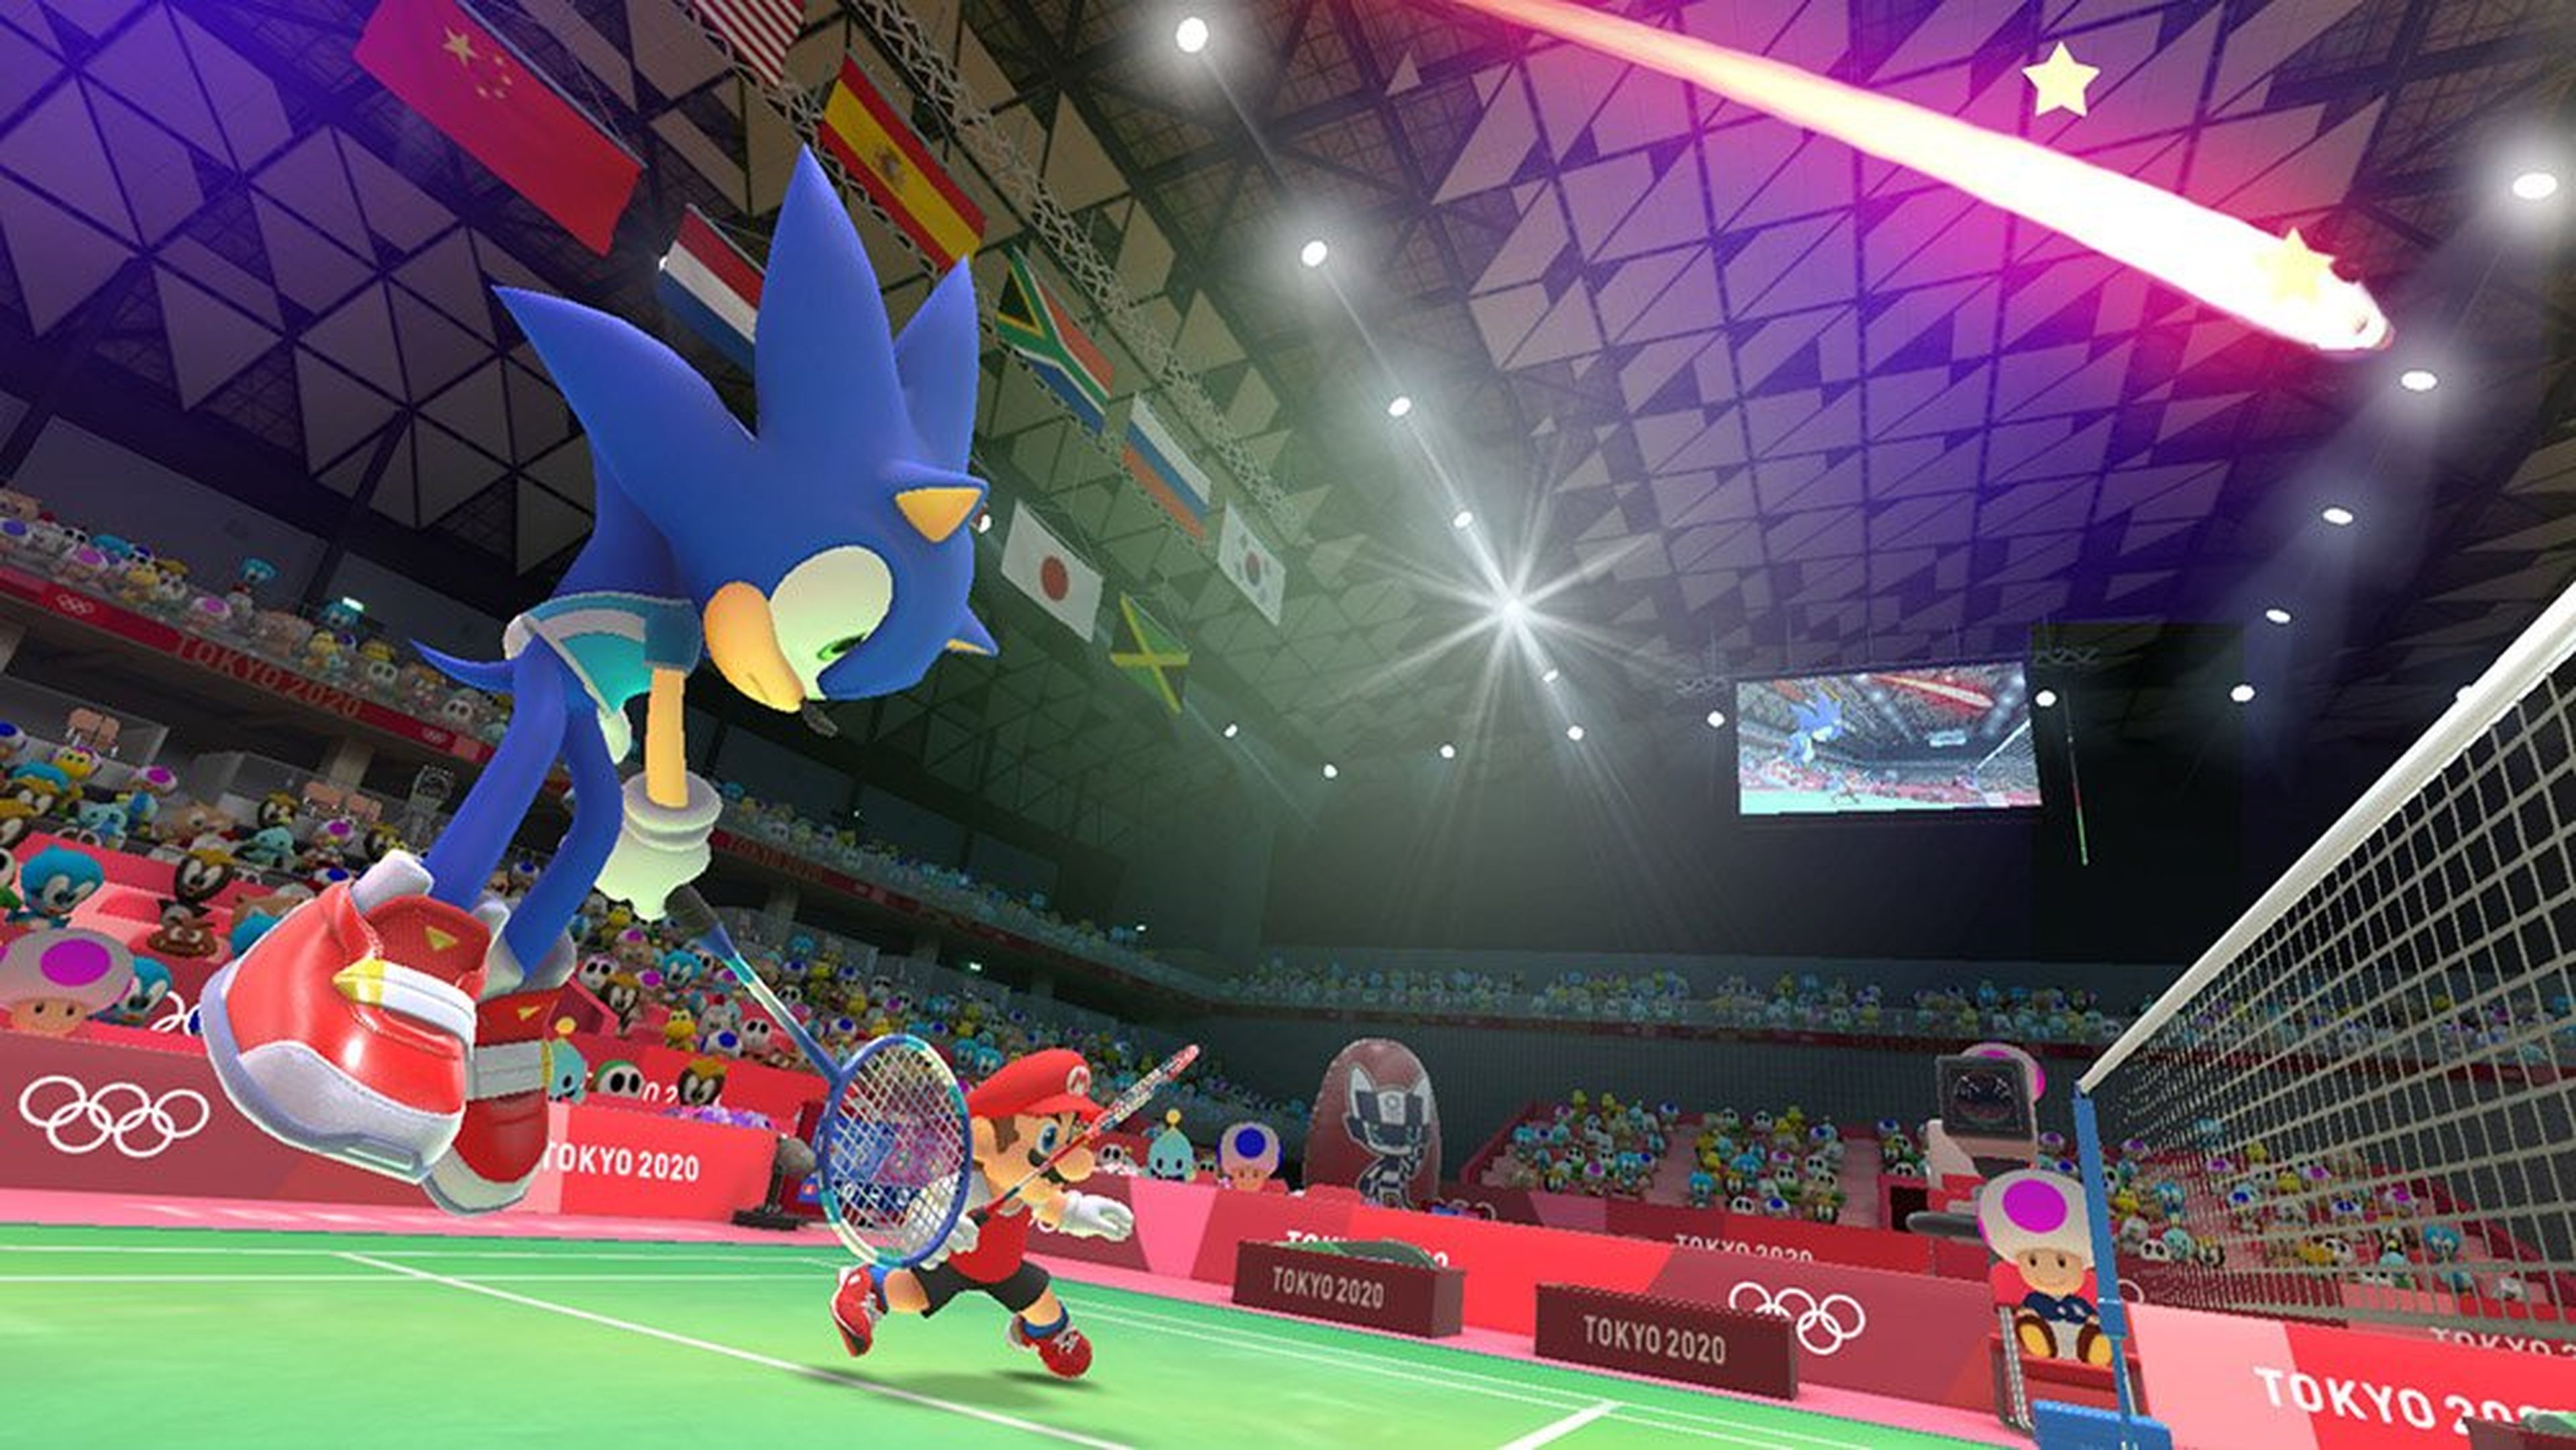 Mario & Sonic en los Juegos Olímpicos de Tokio 2020